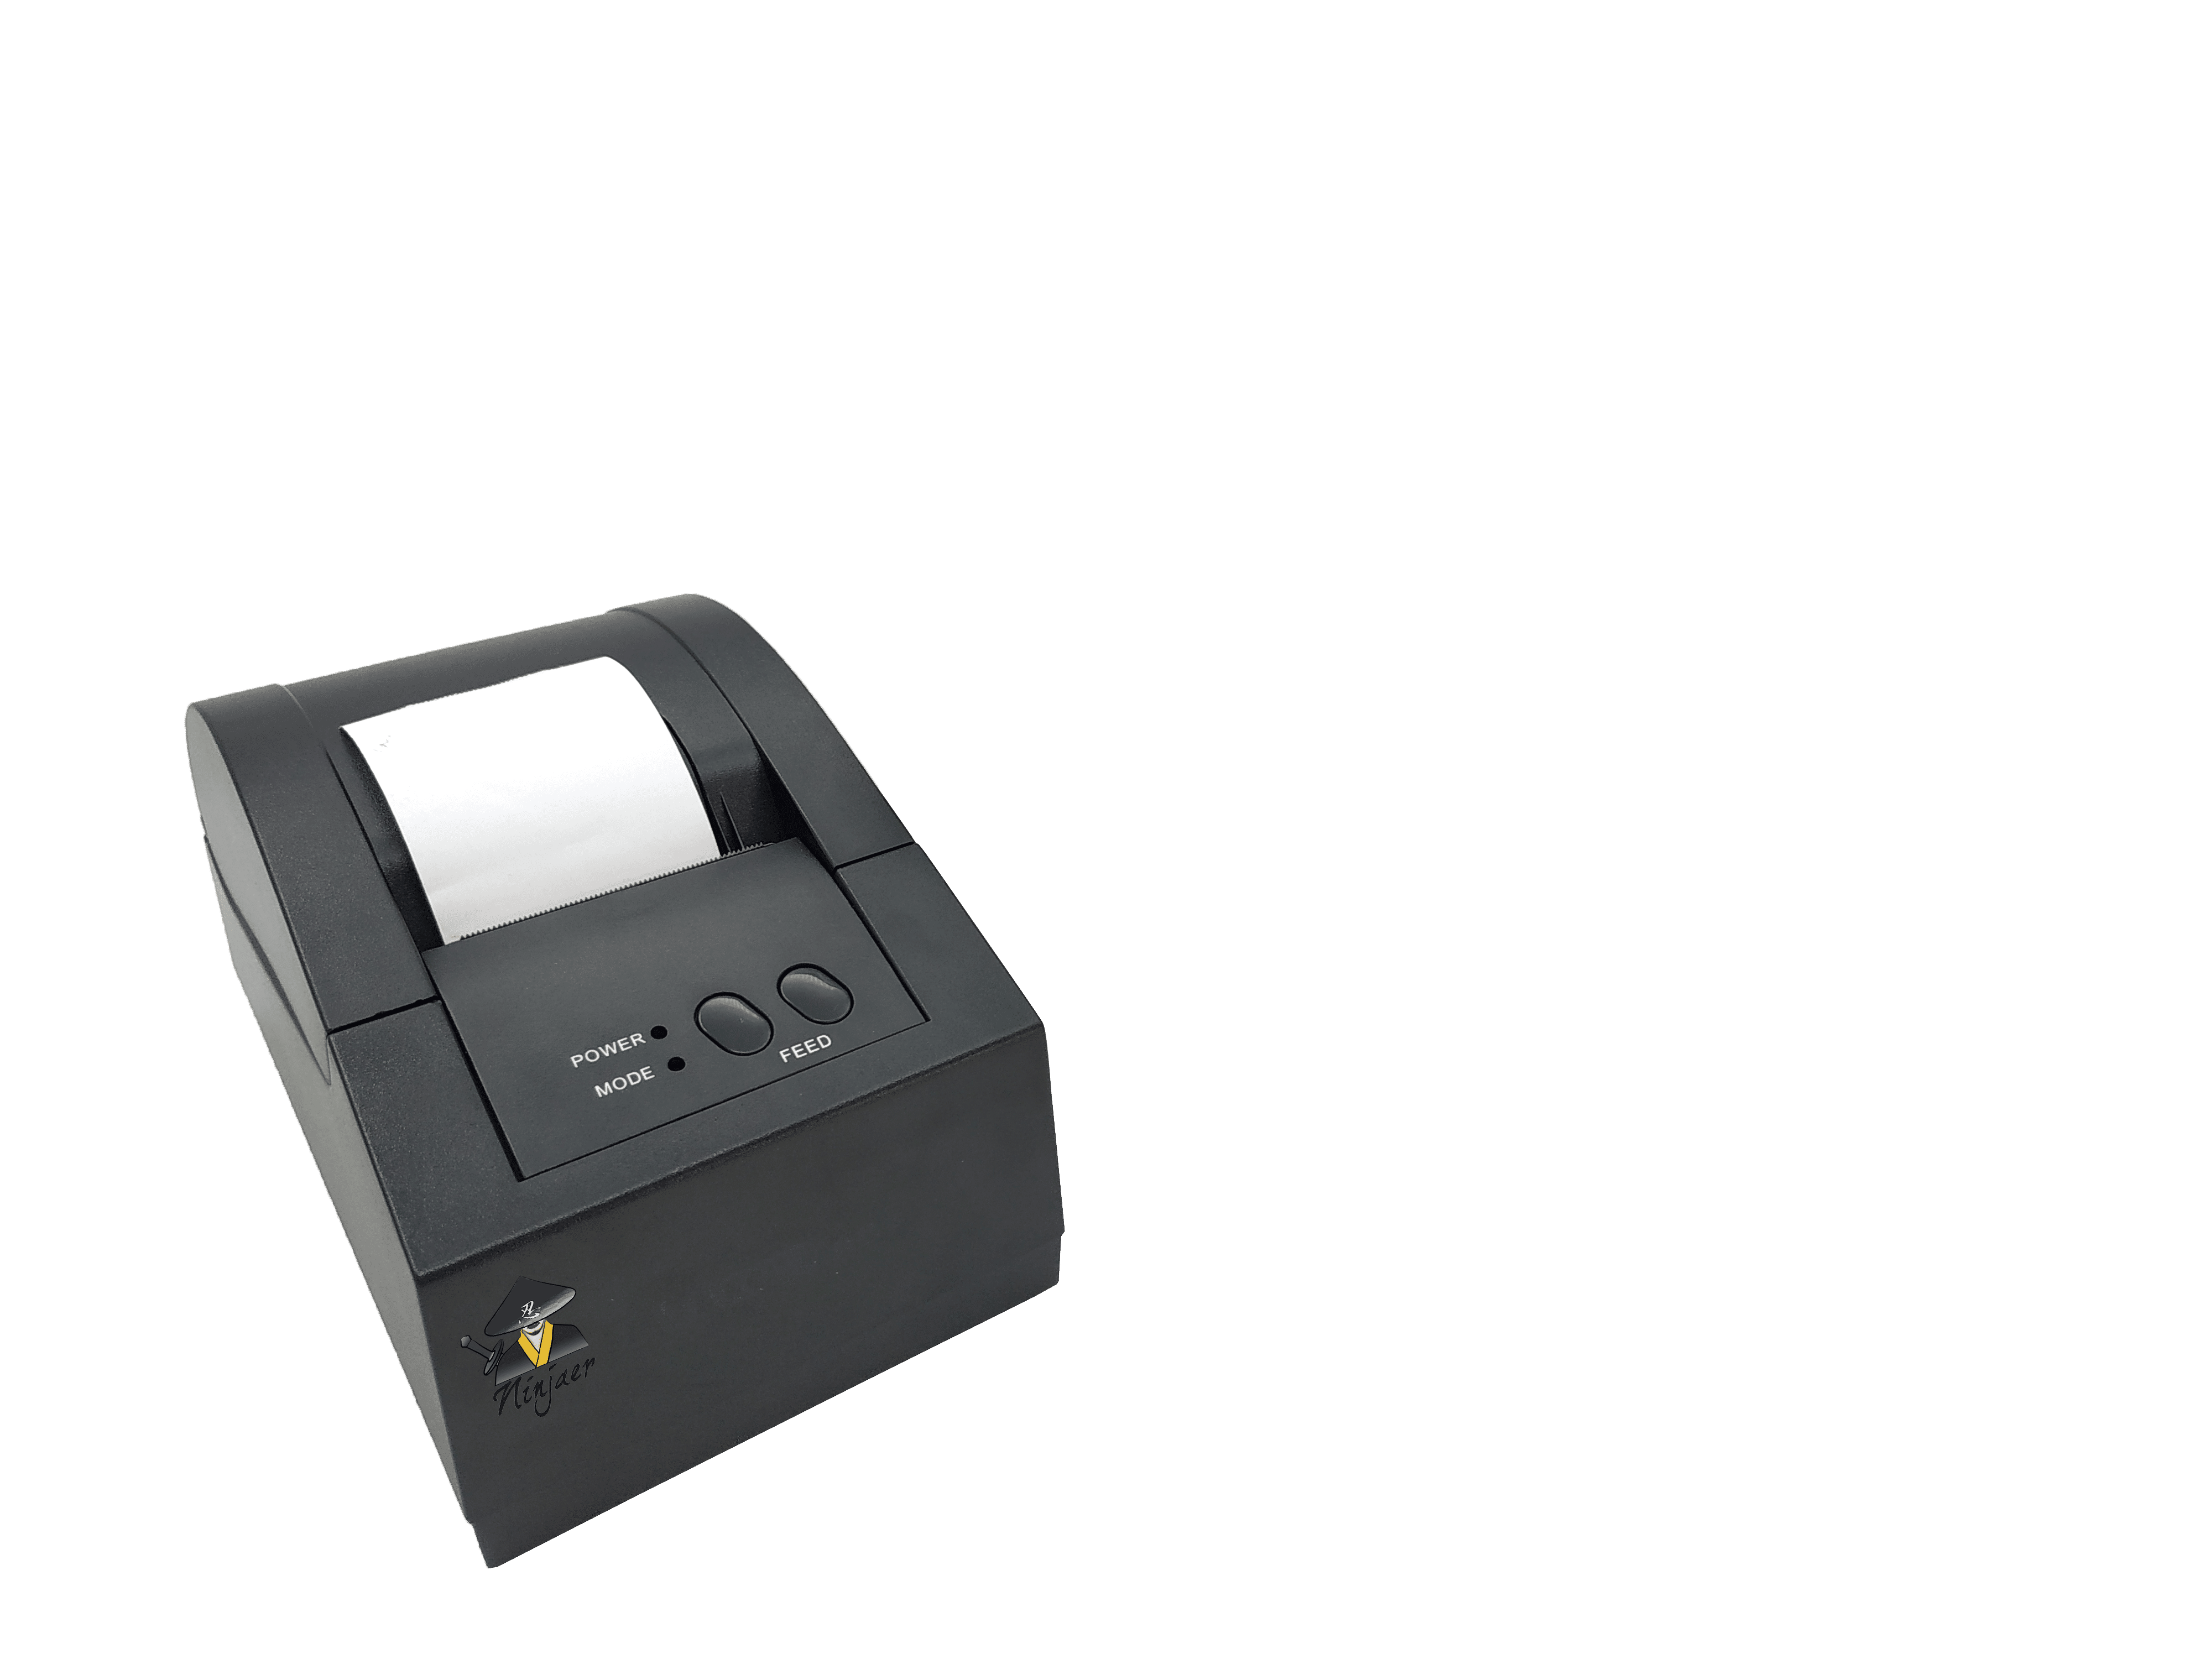 58mm thermal printer driver for mac